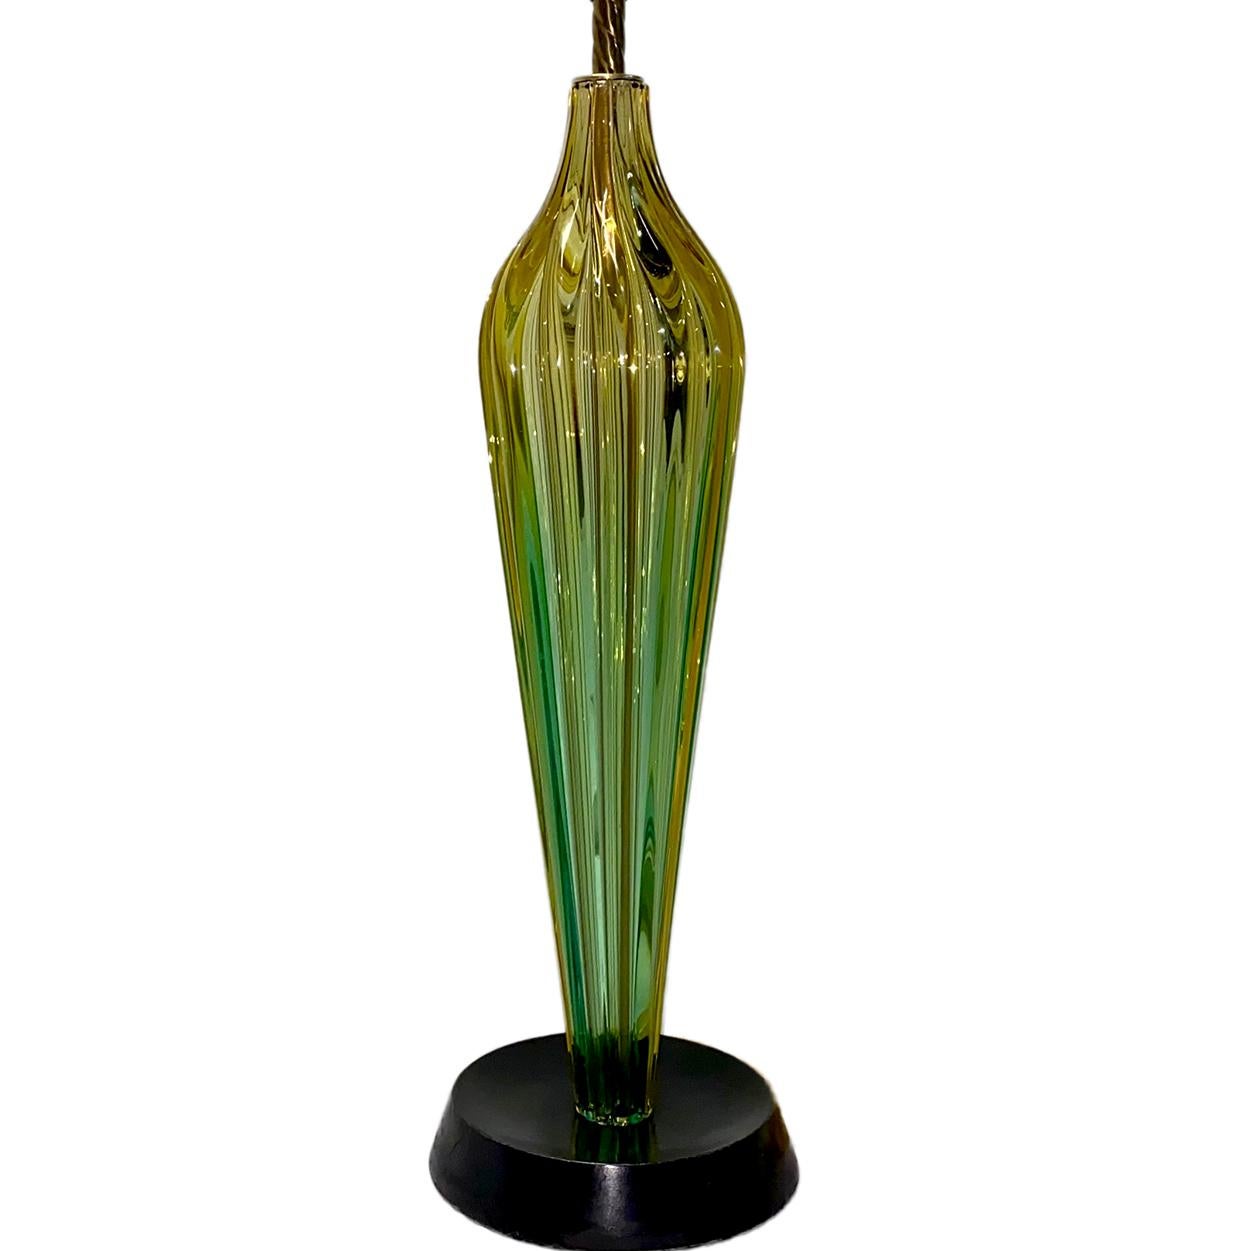 Eine Tischlampe aus Muranoglas mit Holzsockel, um 1920.

Abmessungen:
Höhe des Körpers: 23